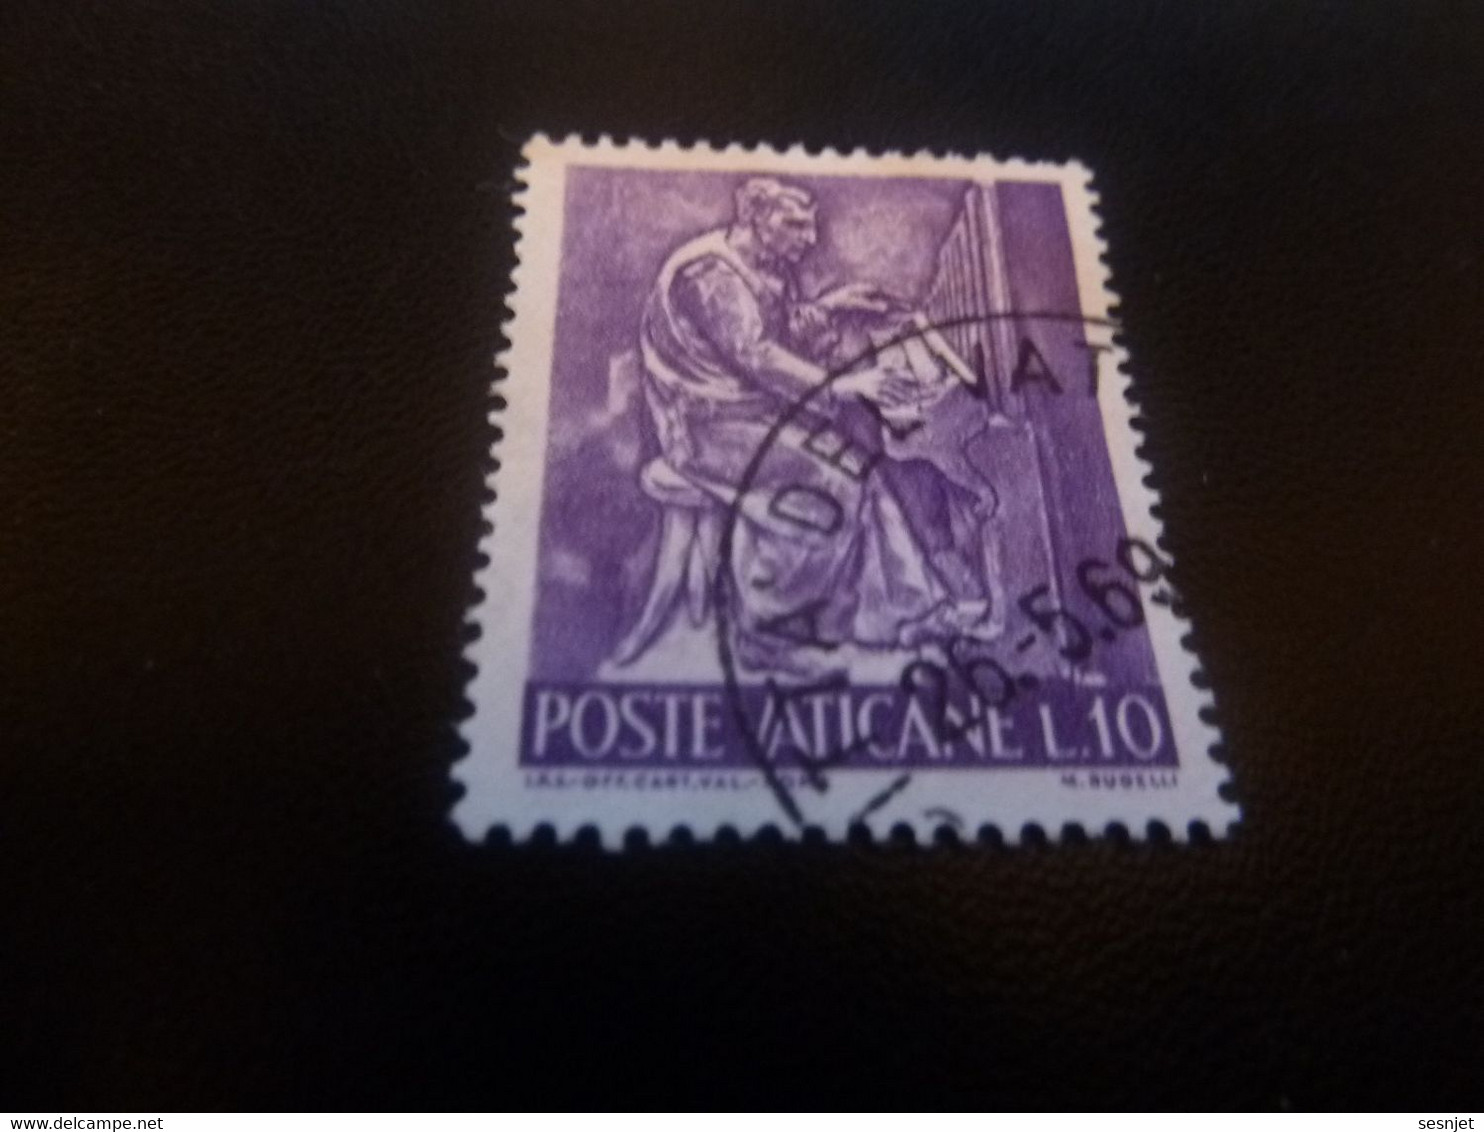 Poste Vaticane - J.P.S Off Cart Val Roma - M. Rudelli - Val L.10 - Lilas Foncé - Oblitéré - Année 1969 - - Gebruikt